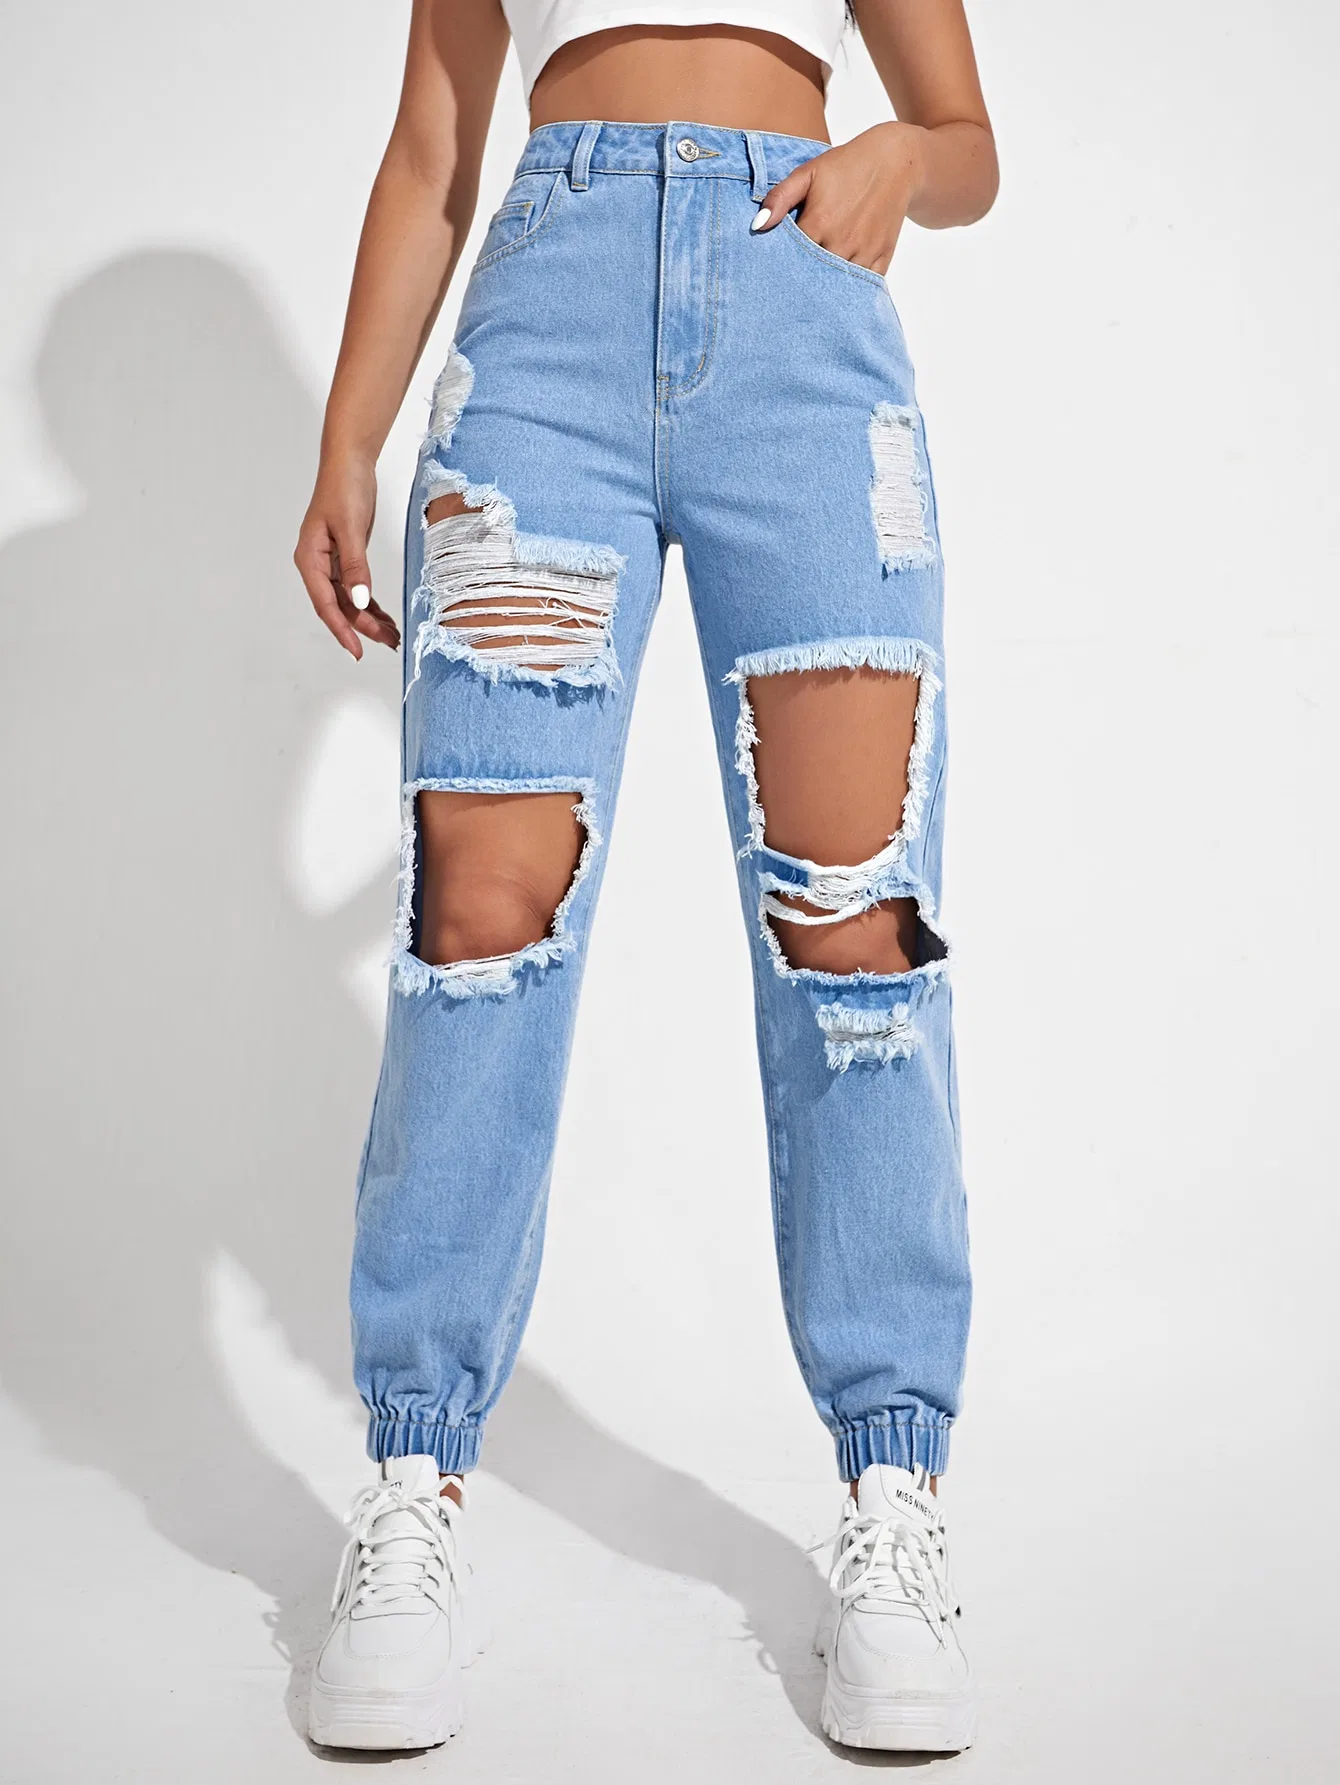 Hoch Taillierte Kratzlöcher Nicht-Stretch Qualität Elastan Unteren Saum Neu Fashion Lady Jeans Hellblaue Boyfrind Fit Jeans